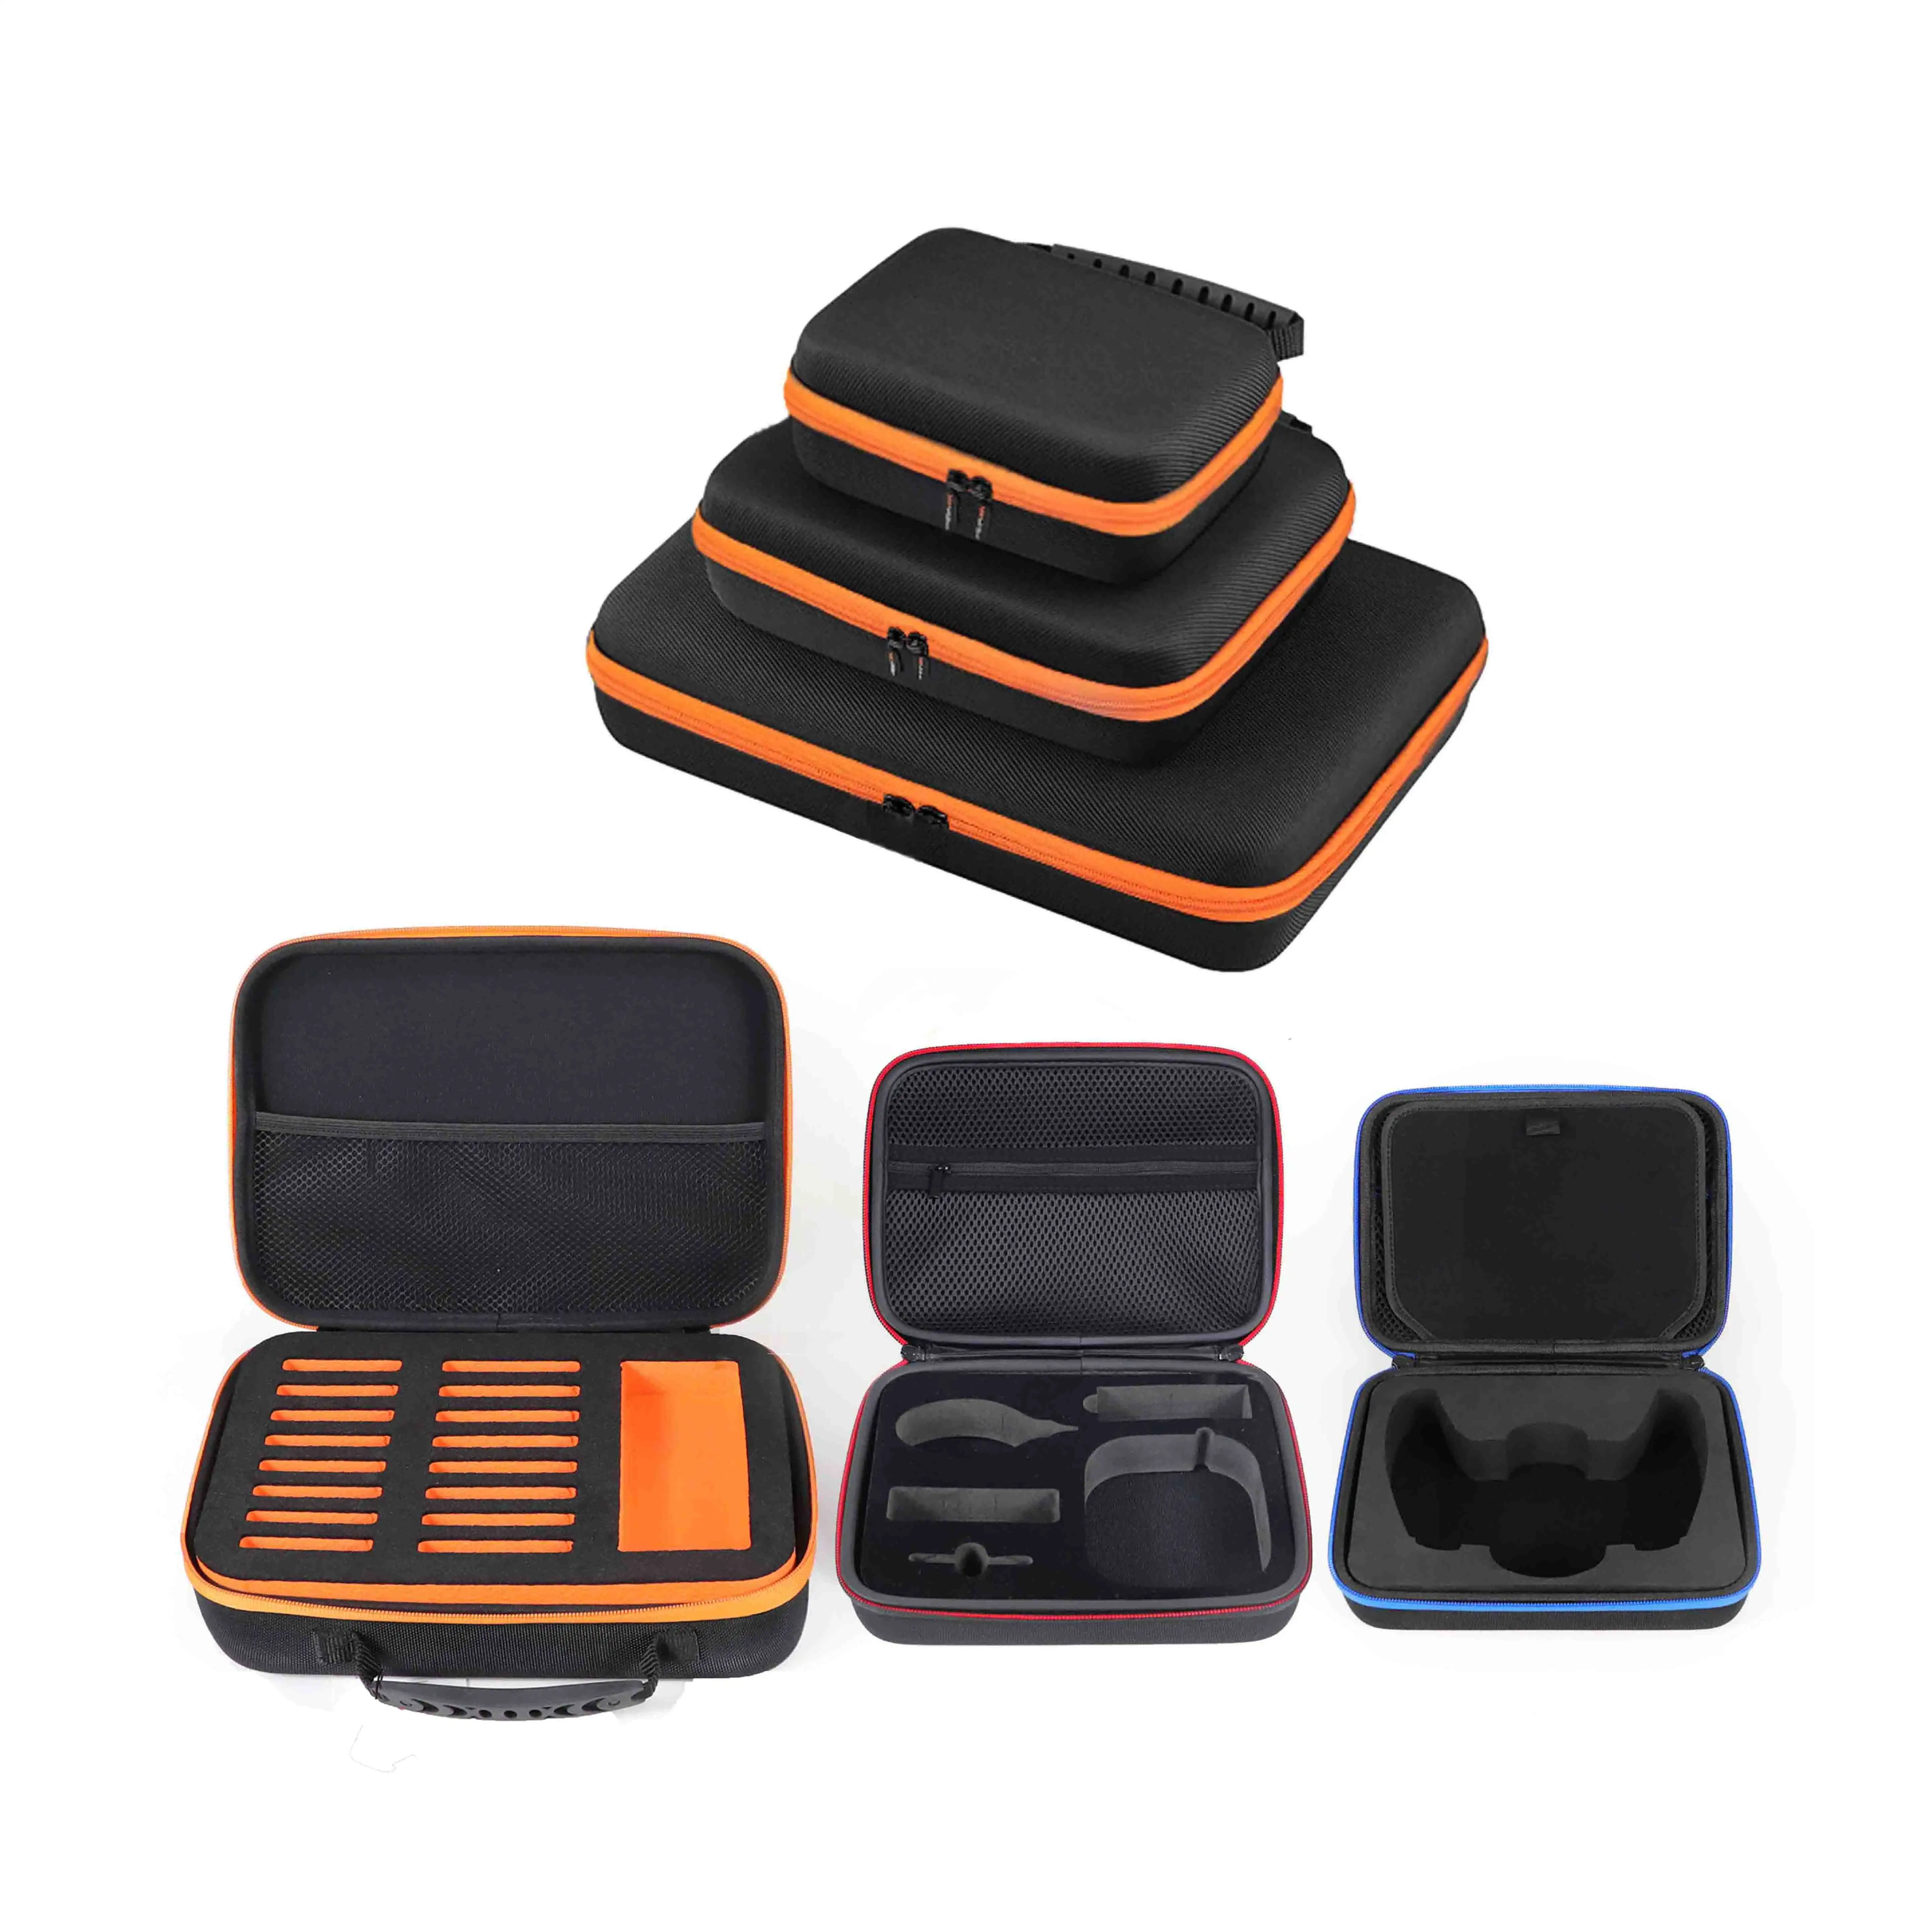 공장 맞춤형 전자 제품 보호 보관 도구 가방 케이스 지퍼 여행 운반 하드 쉘 성형 EVA 케이스